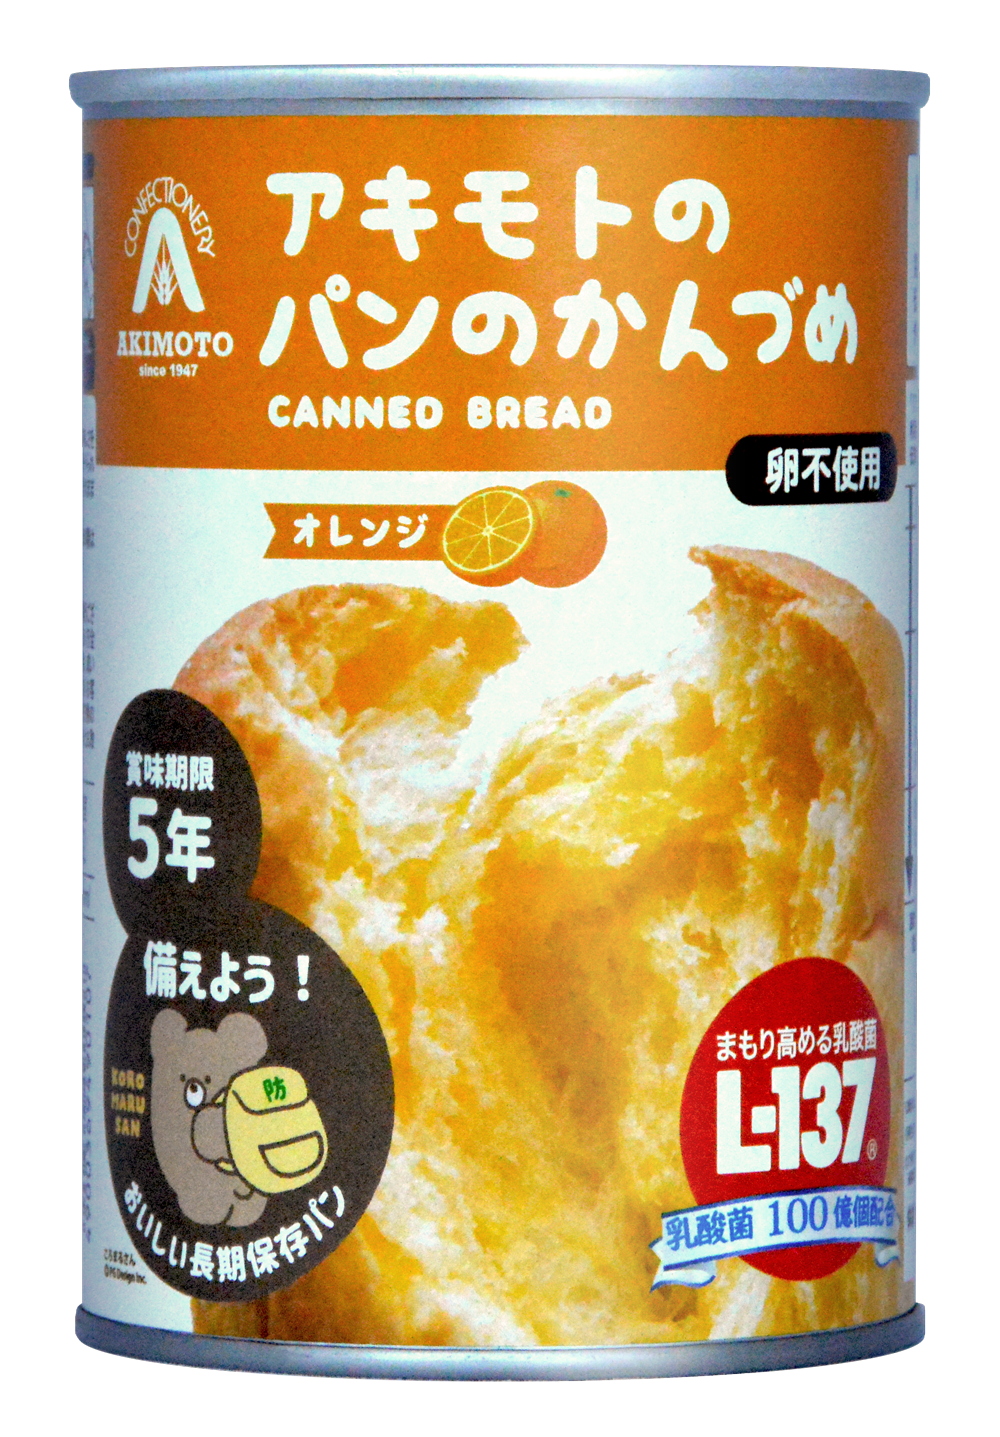 パン缶_オレンジ味